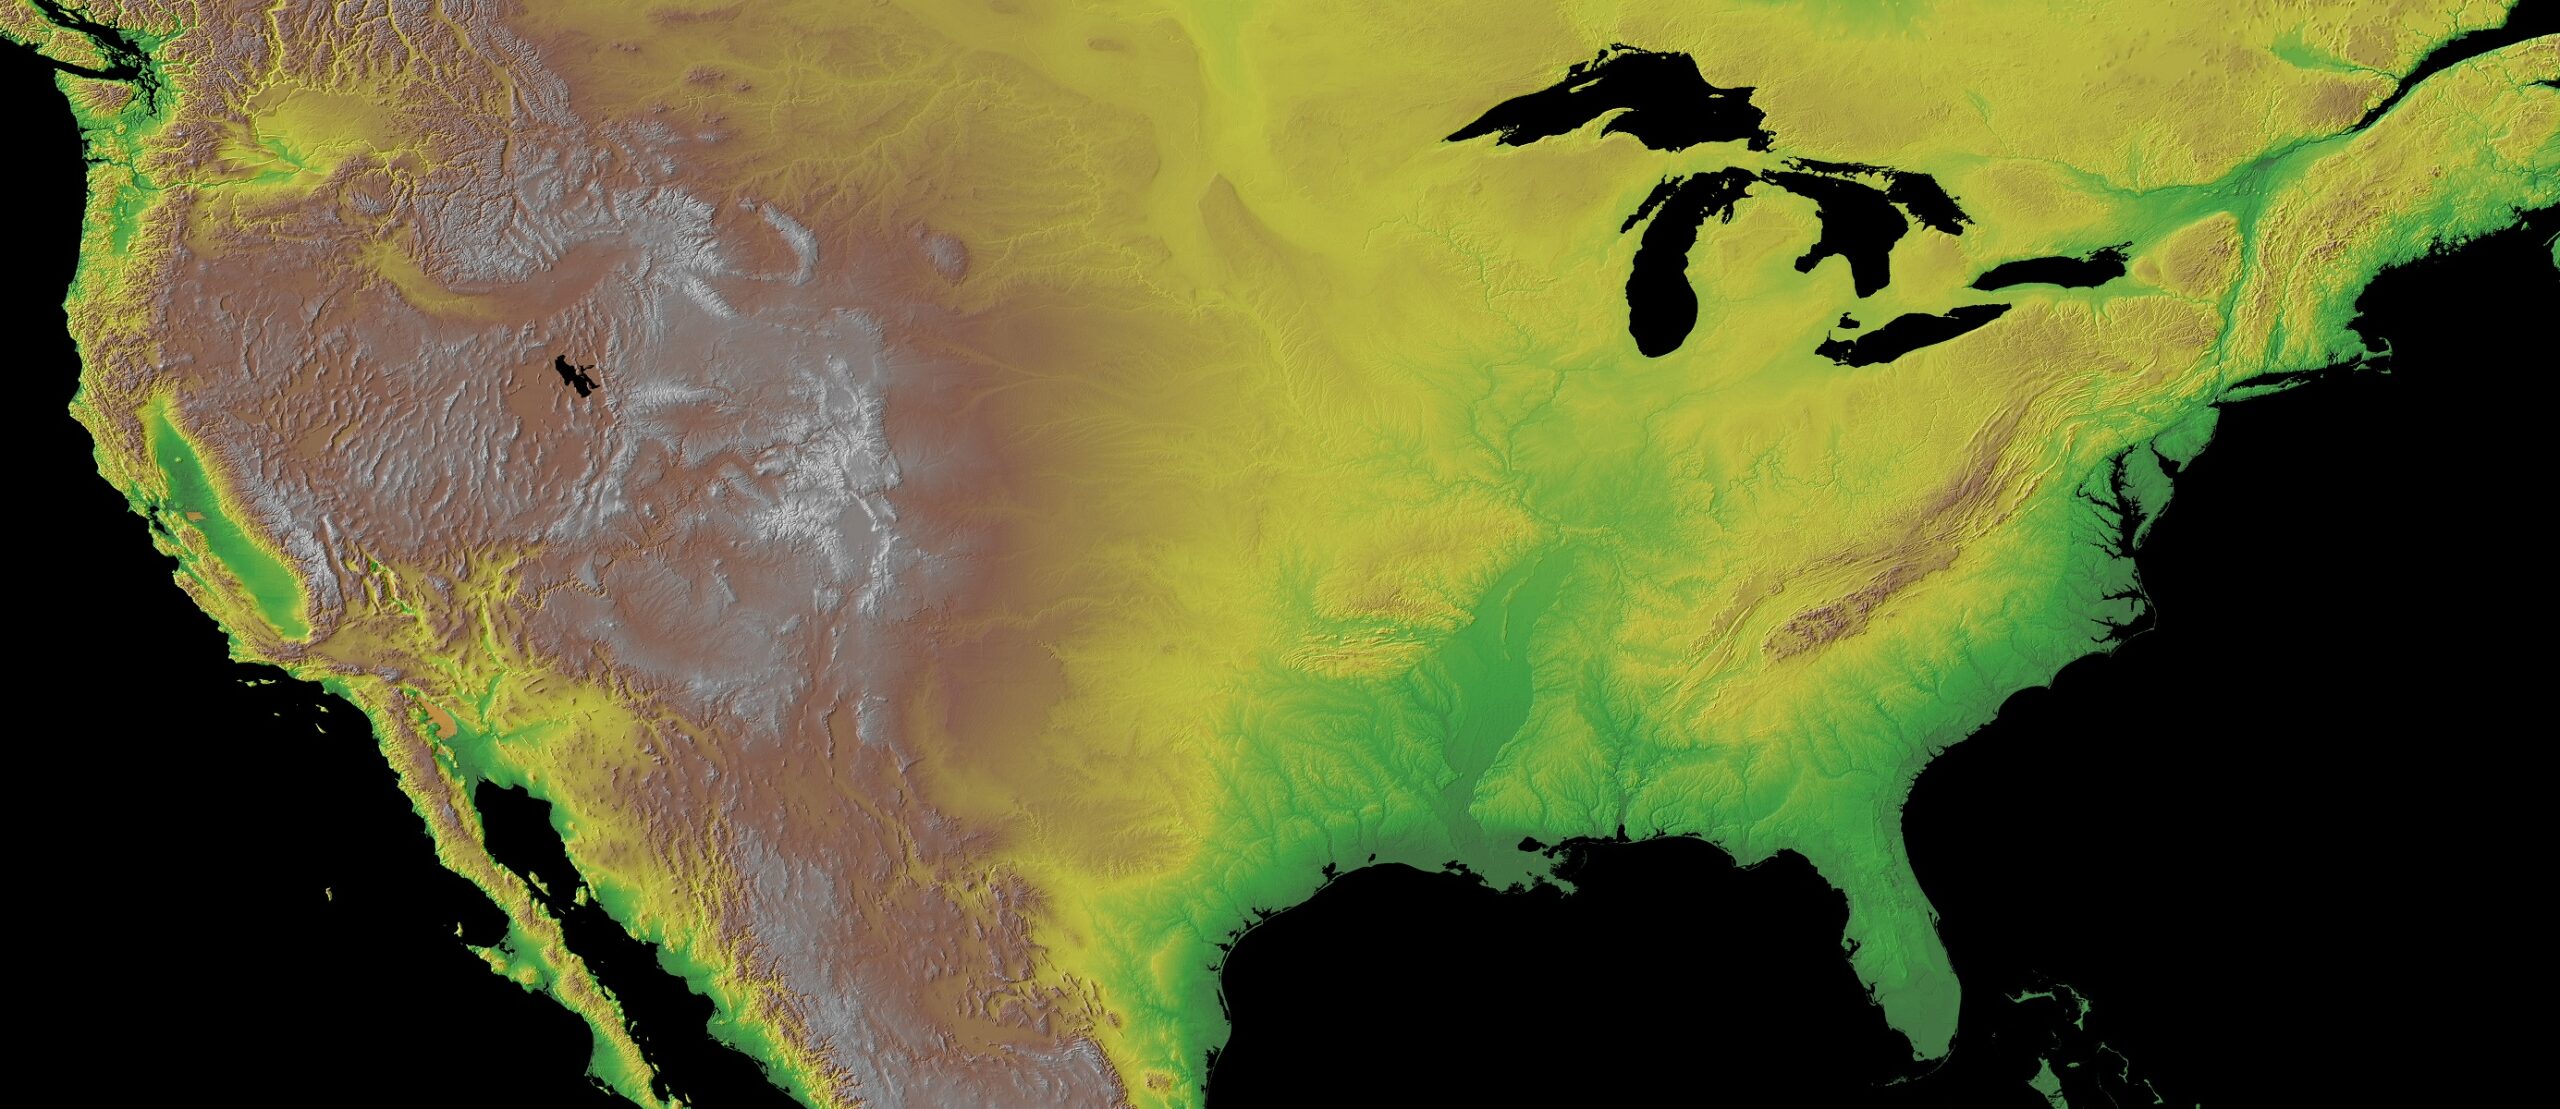 Elevation Maps United States